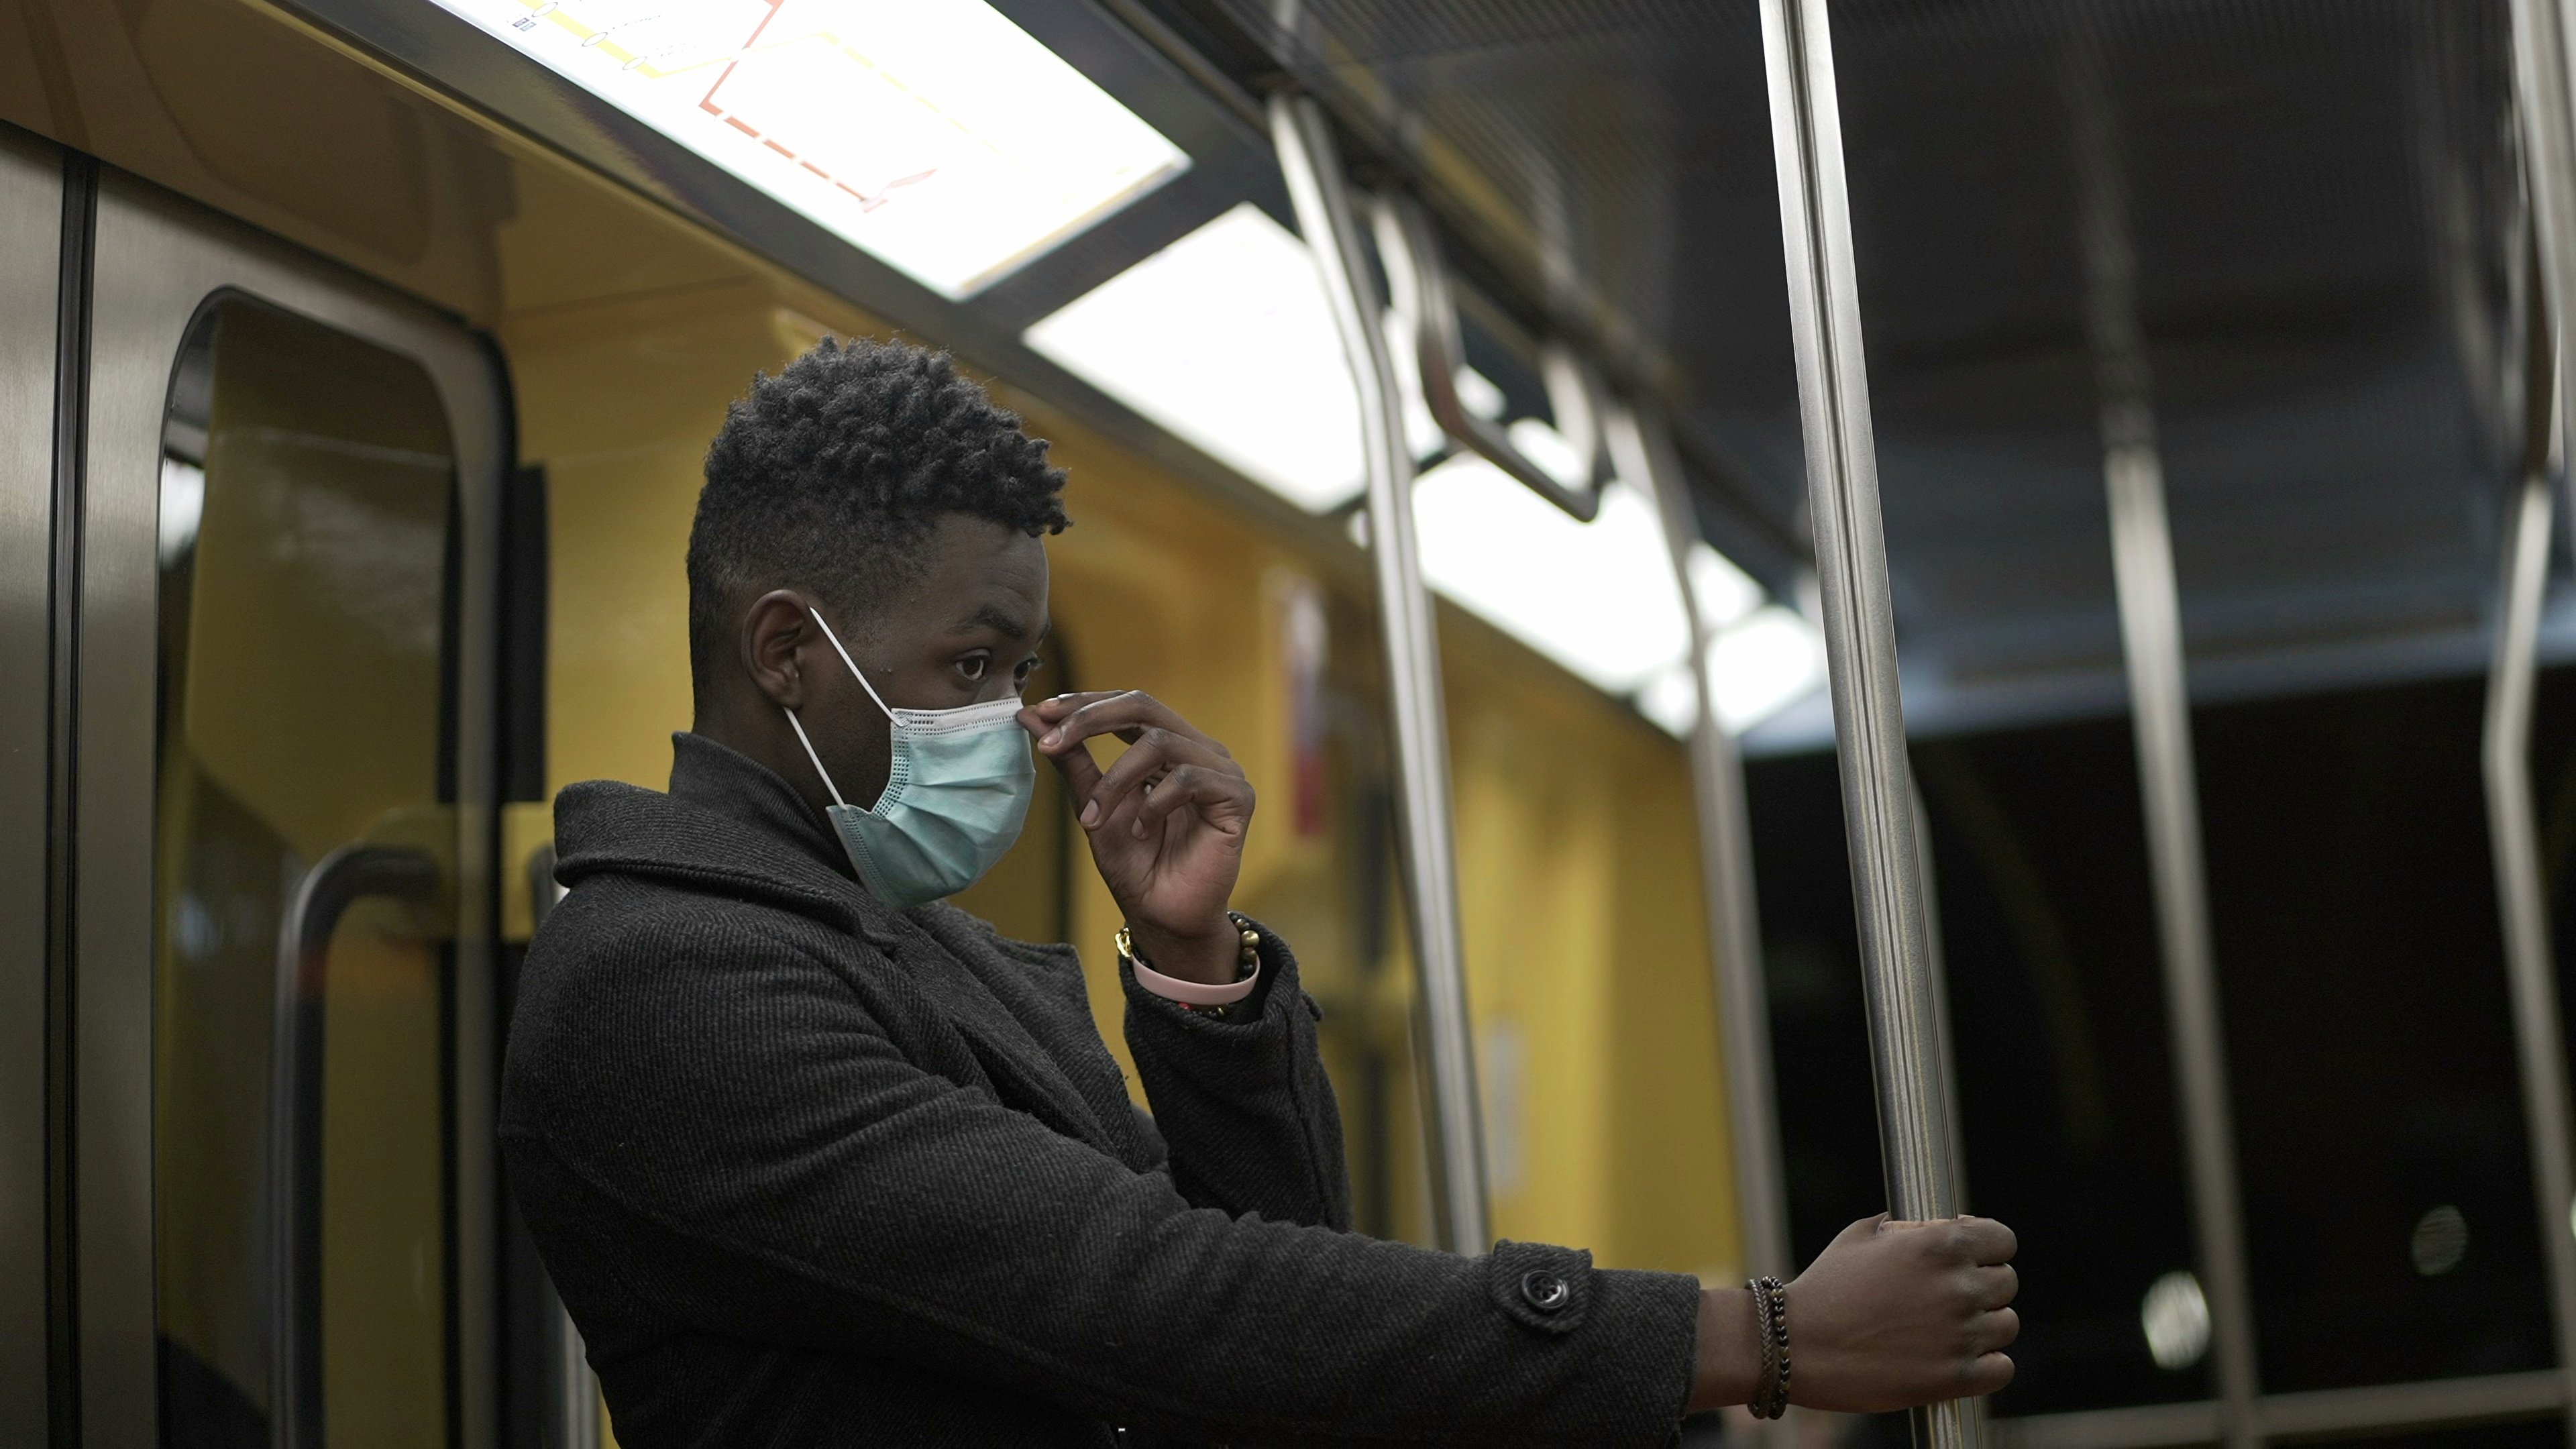 Brasil: 1 em cada 3 pessoas negras já sofreu racismo no transporte público